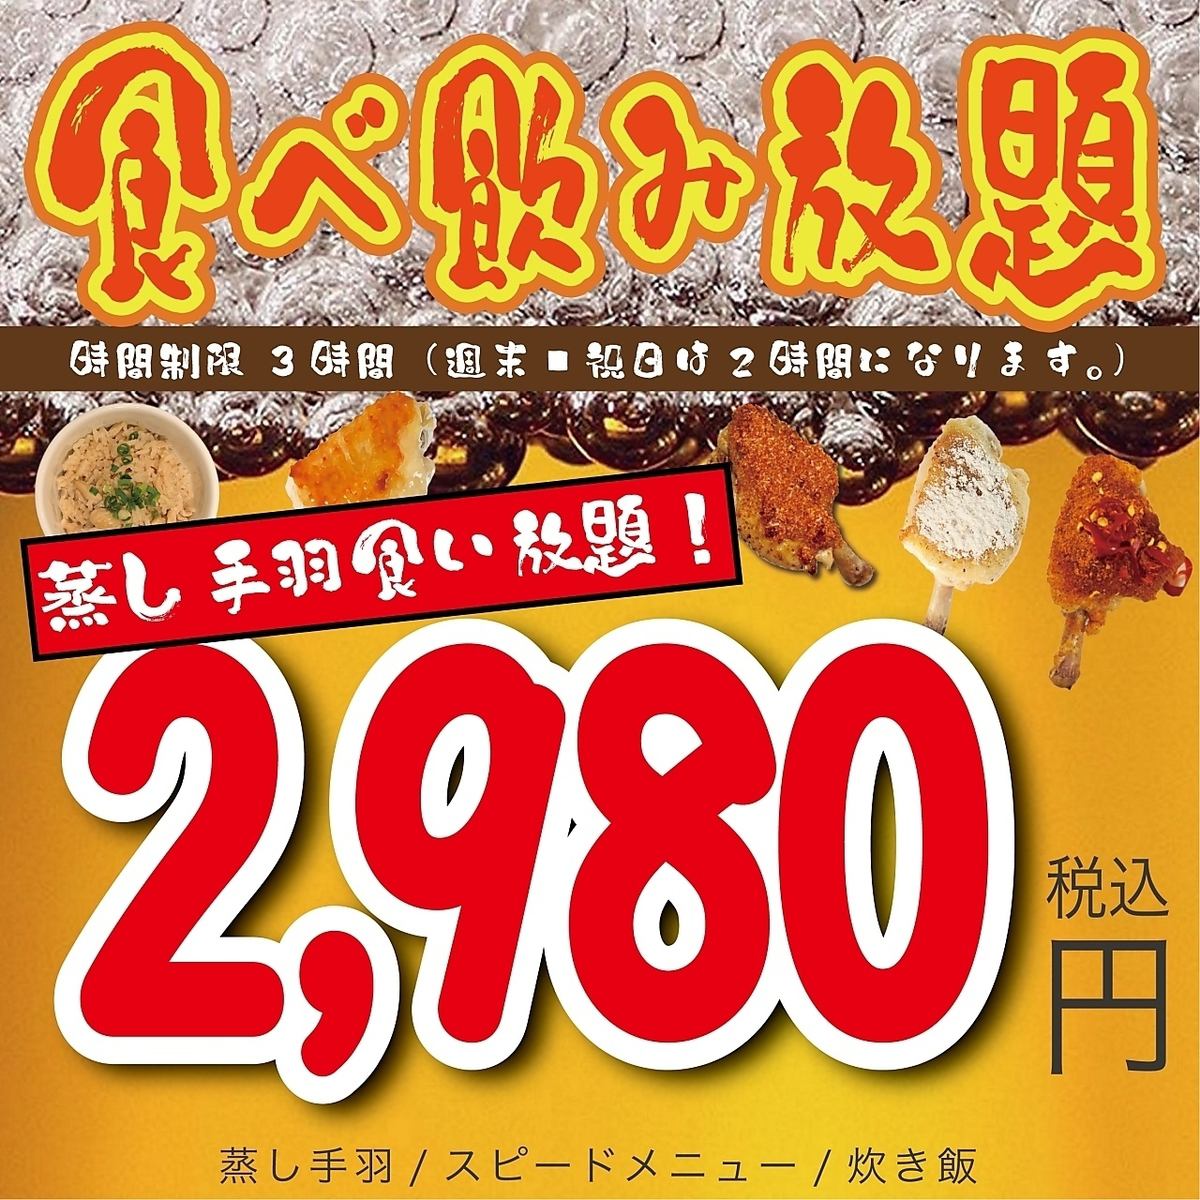 包括蒸雞翅、餃子、點菜在內的無限暢飲套餐2,980日元起！